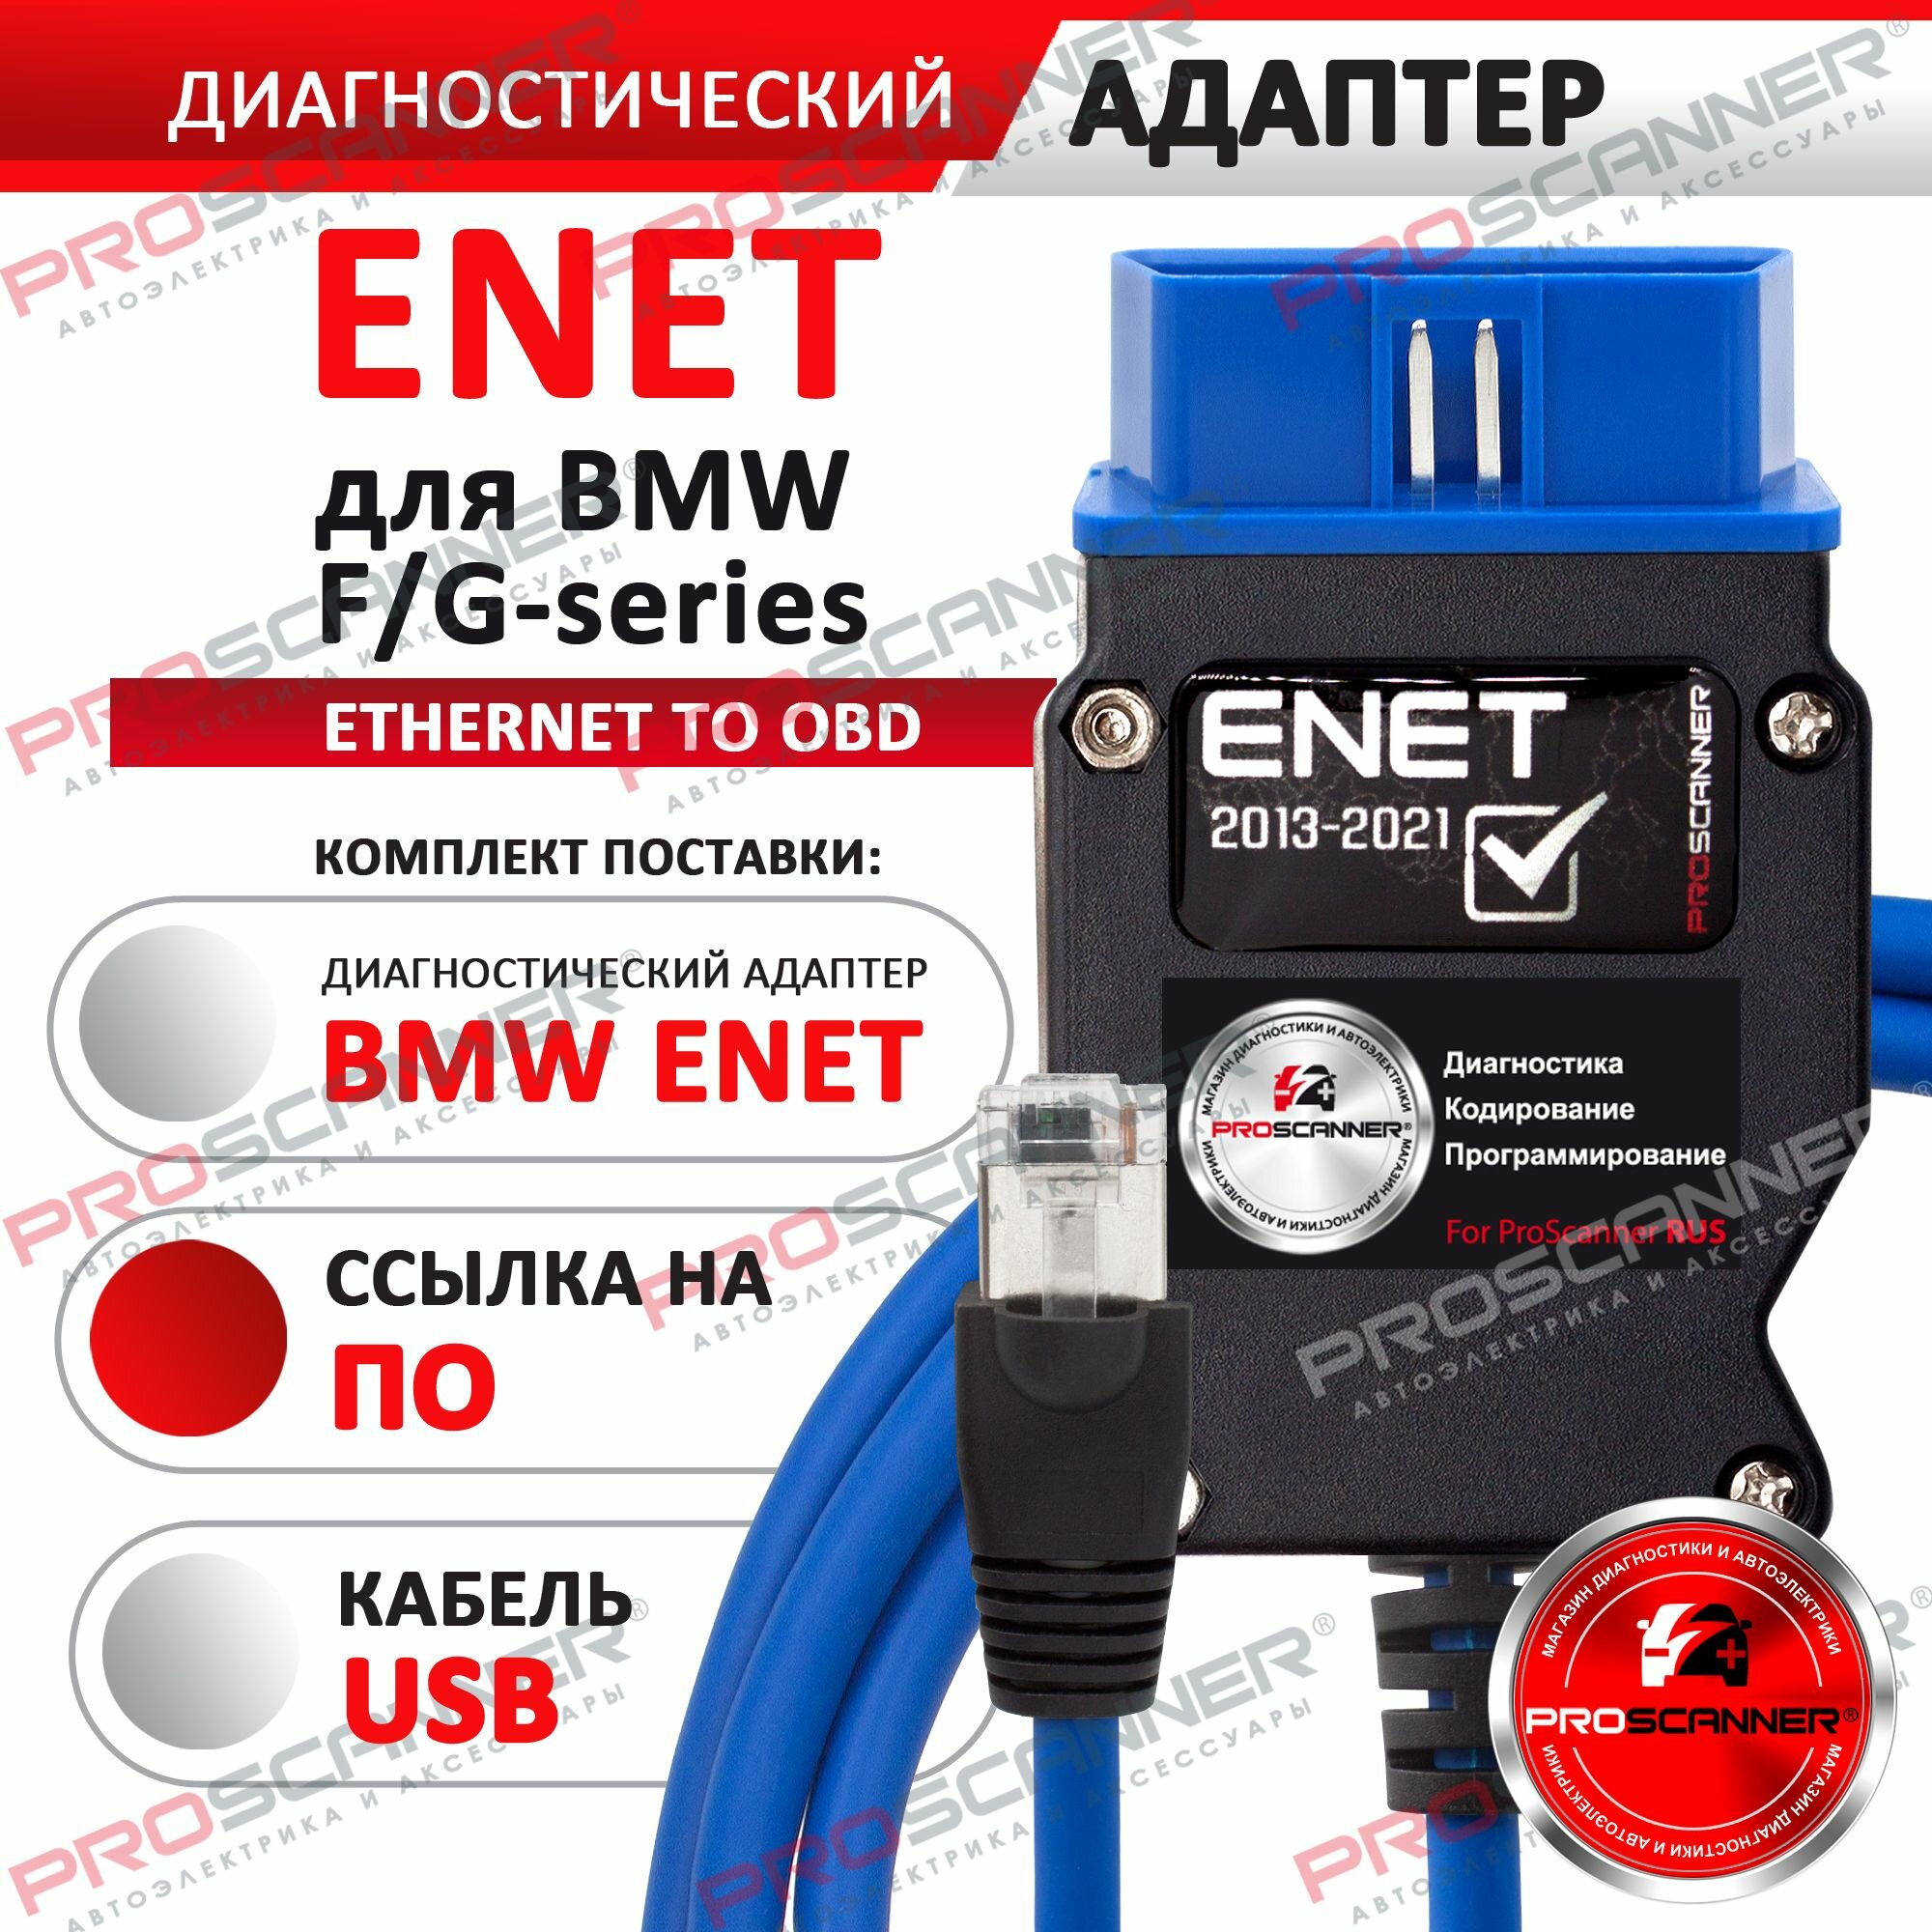 Автосканер Кабель для БМВ для диагностики и кодирования ENET F - G серии (синий)